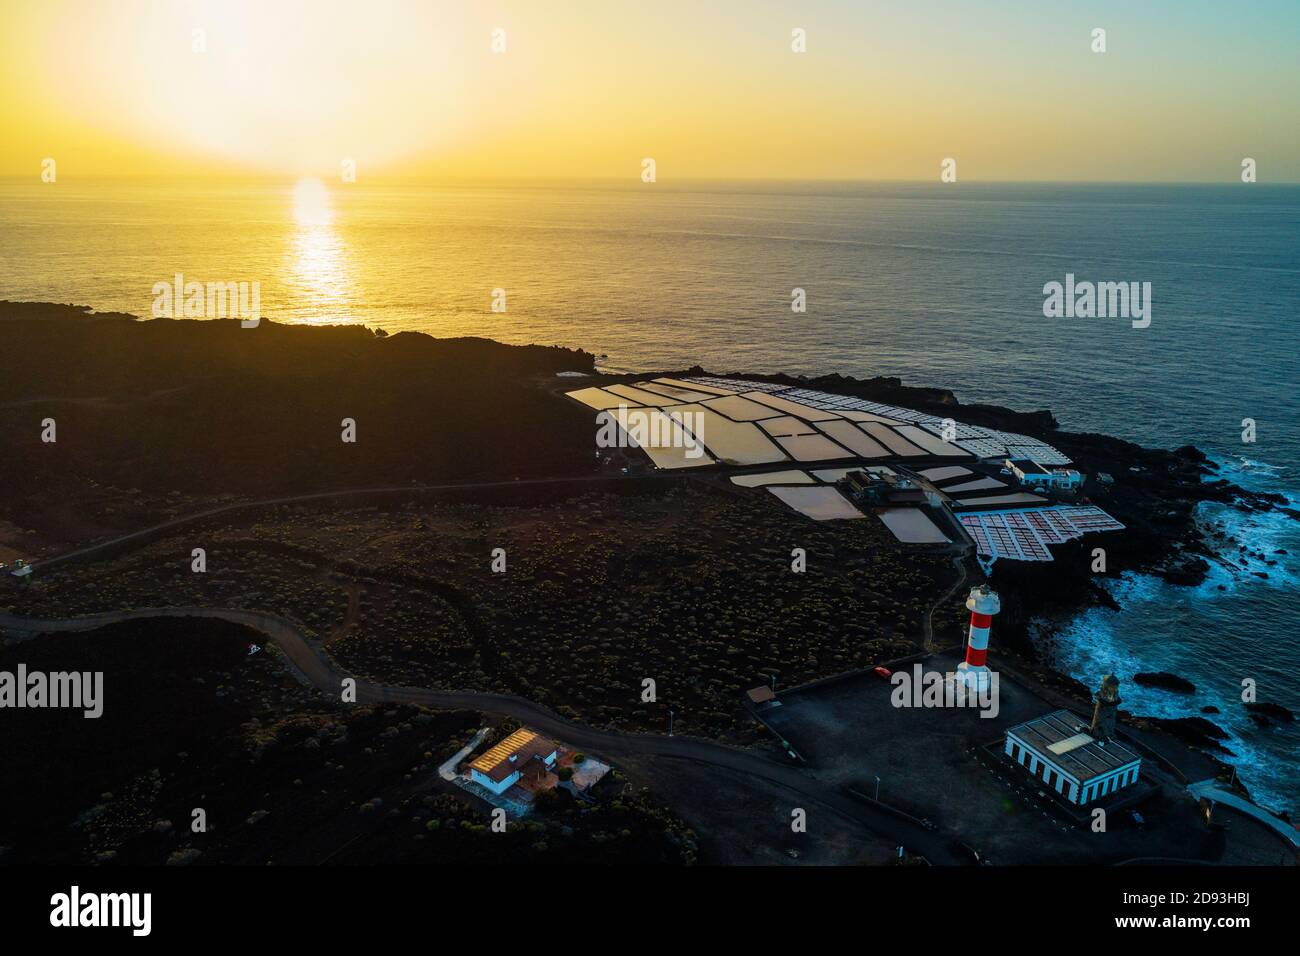 Europa, España, Islas Canarias, La Palma, de la Biosfera por la Unesco sitio, vista aérea de las salinas y el faro en el Faro de Fuencaliente Foto de stock